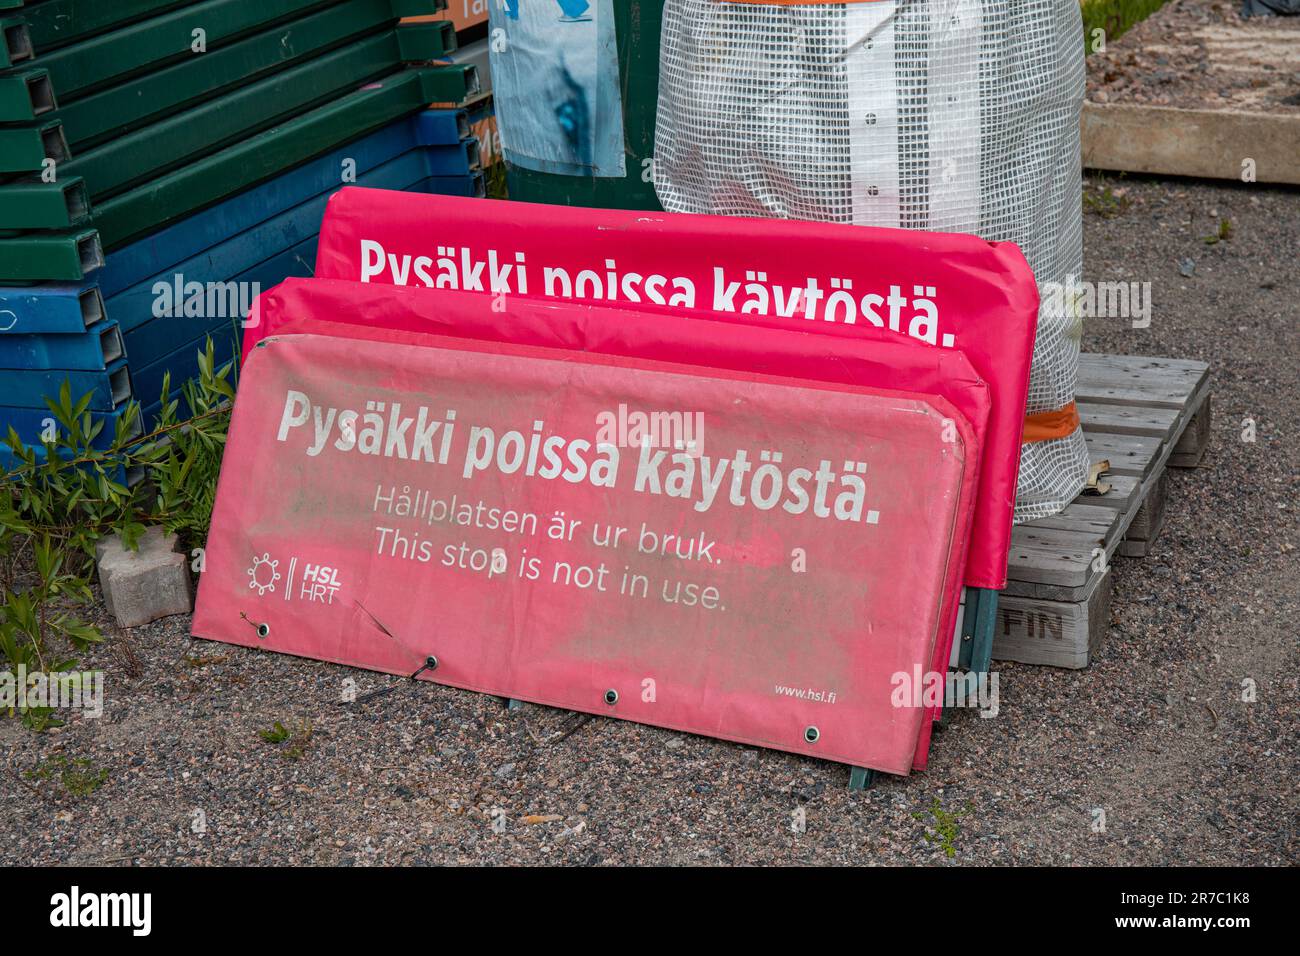 Pysäkki poissa käytöstä. This stop is not in use. Red tram or bus stop sign covers in Kyläsaari district of Helsinki, Finland. Stock Photo